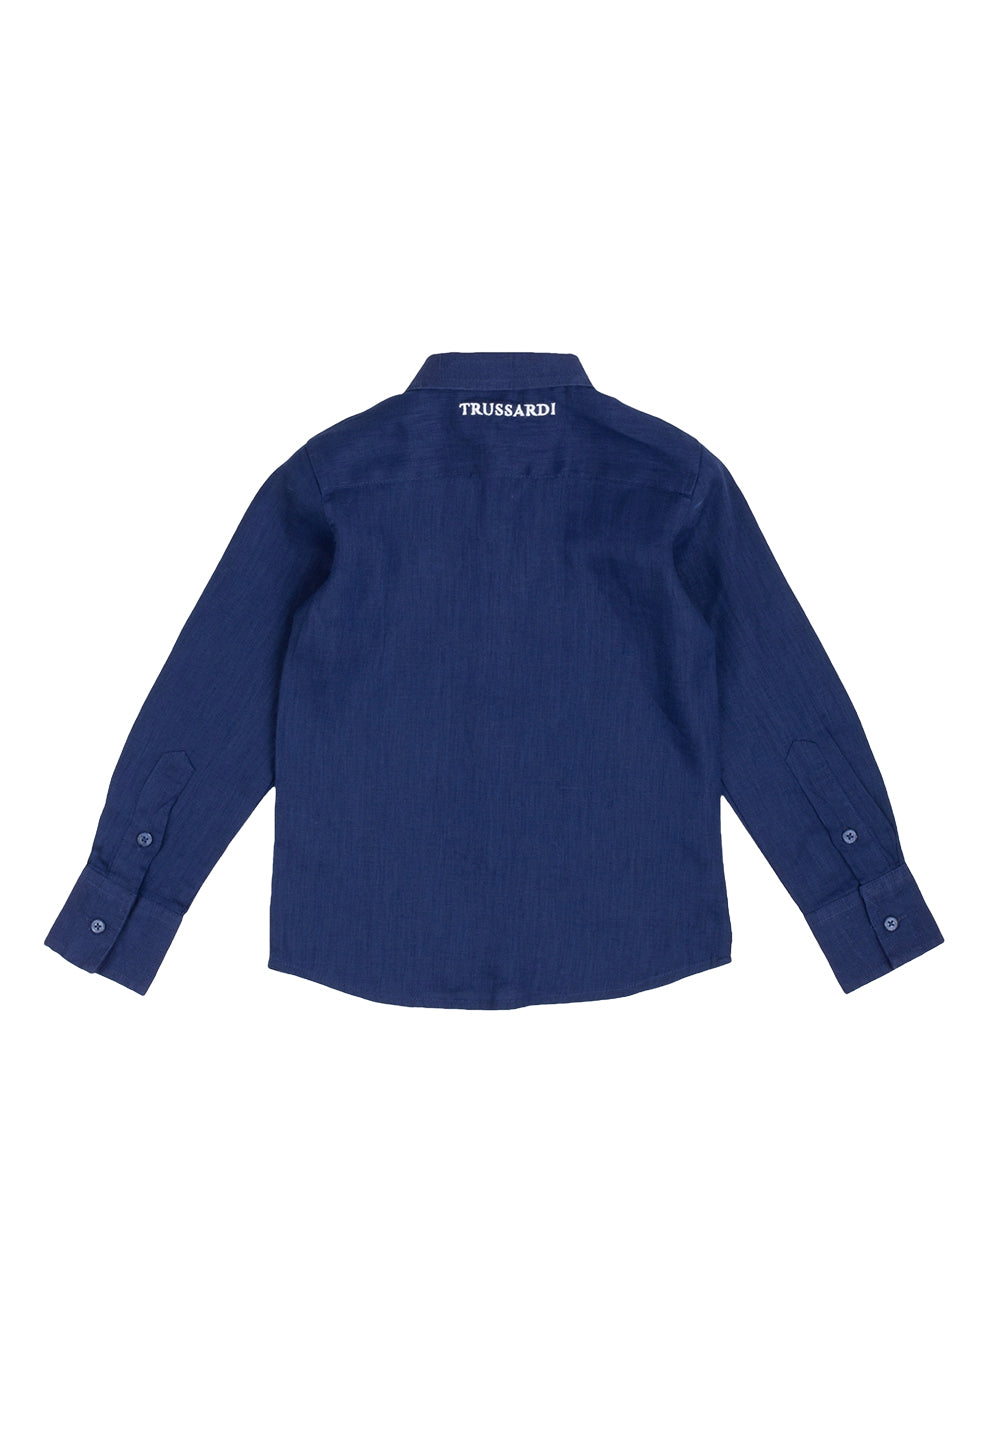 Camicia blu per bambino - Primamoda kids